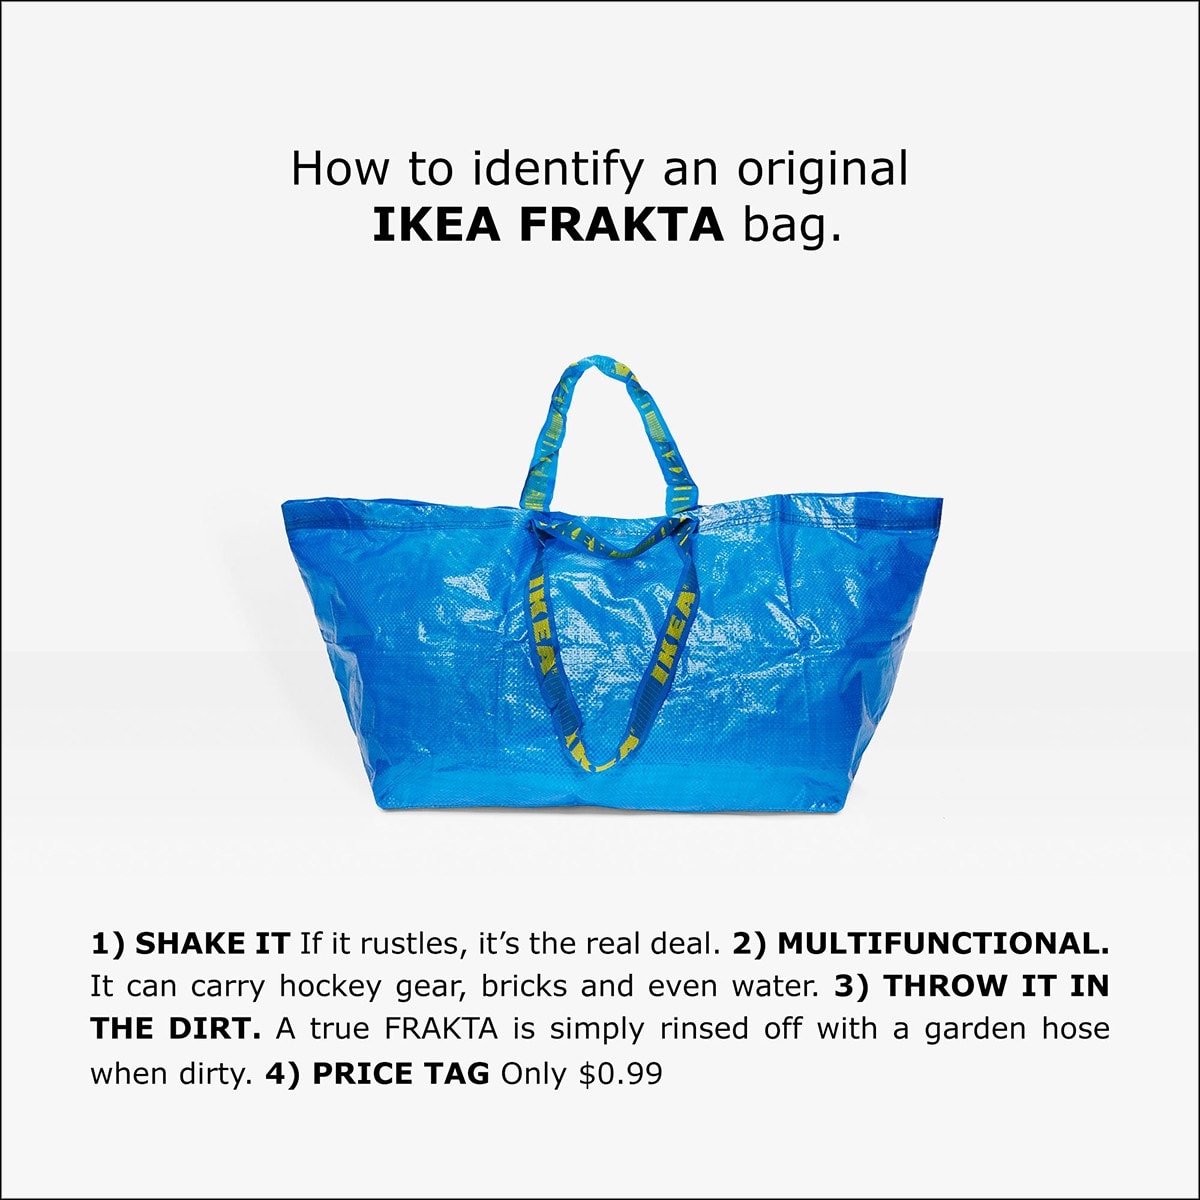 看看 IKEA 怎樣回應 BALENCIAGA 的「致敬」袋子